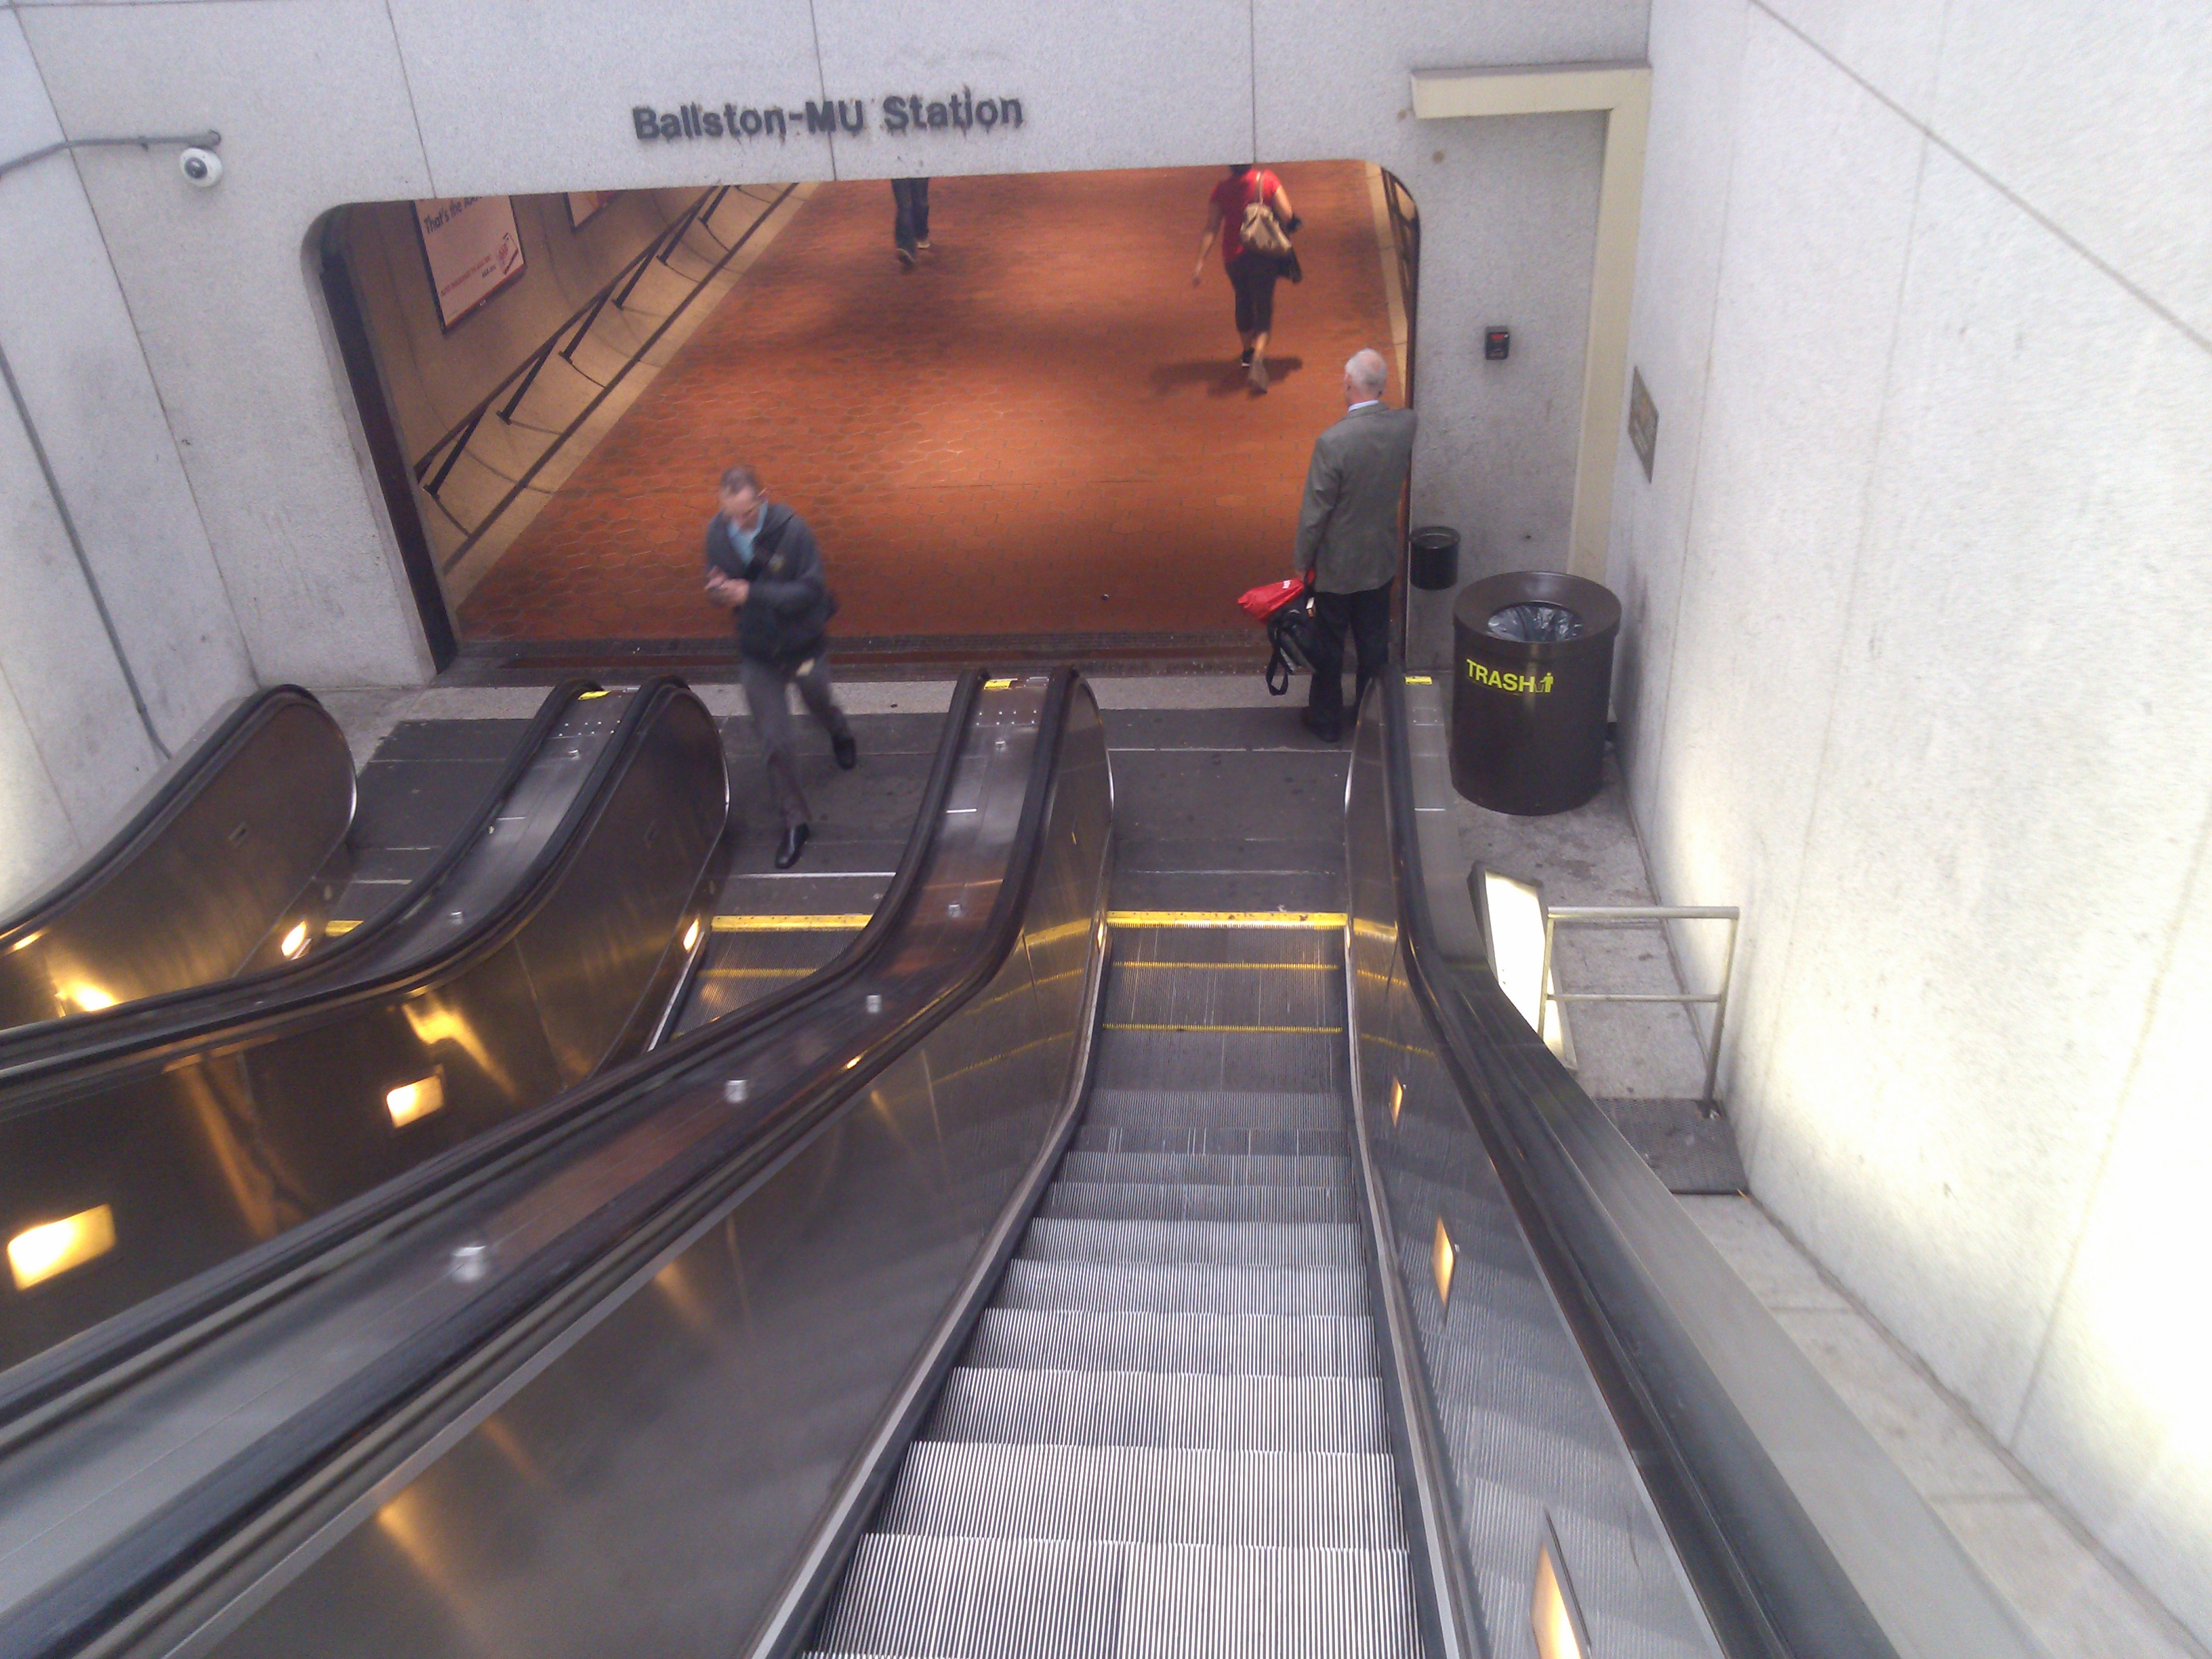 Going down the escalator to Ballston Metro